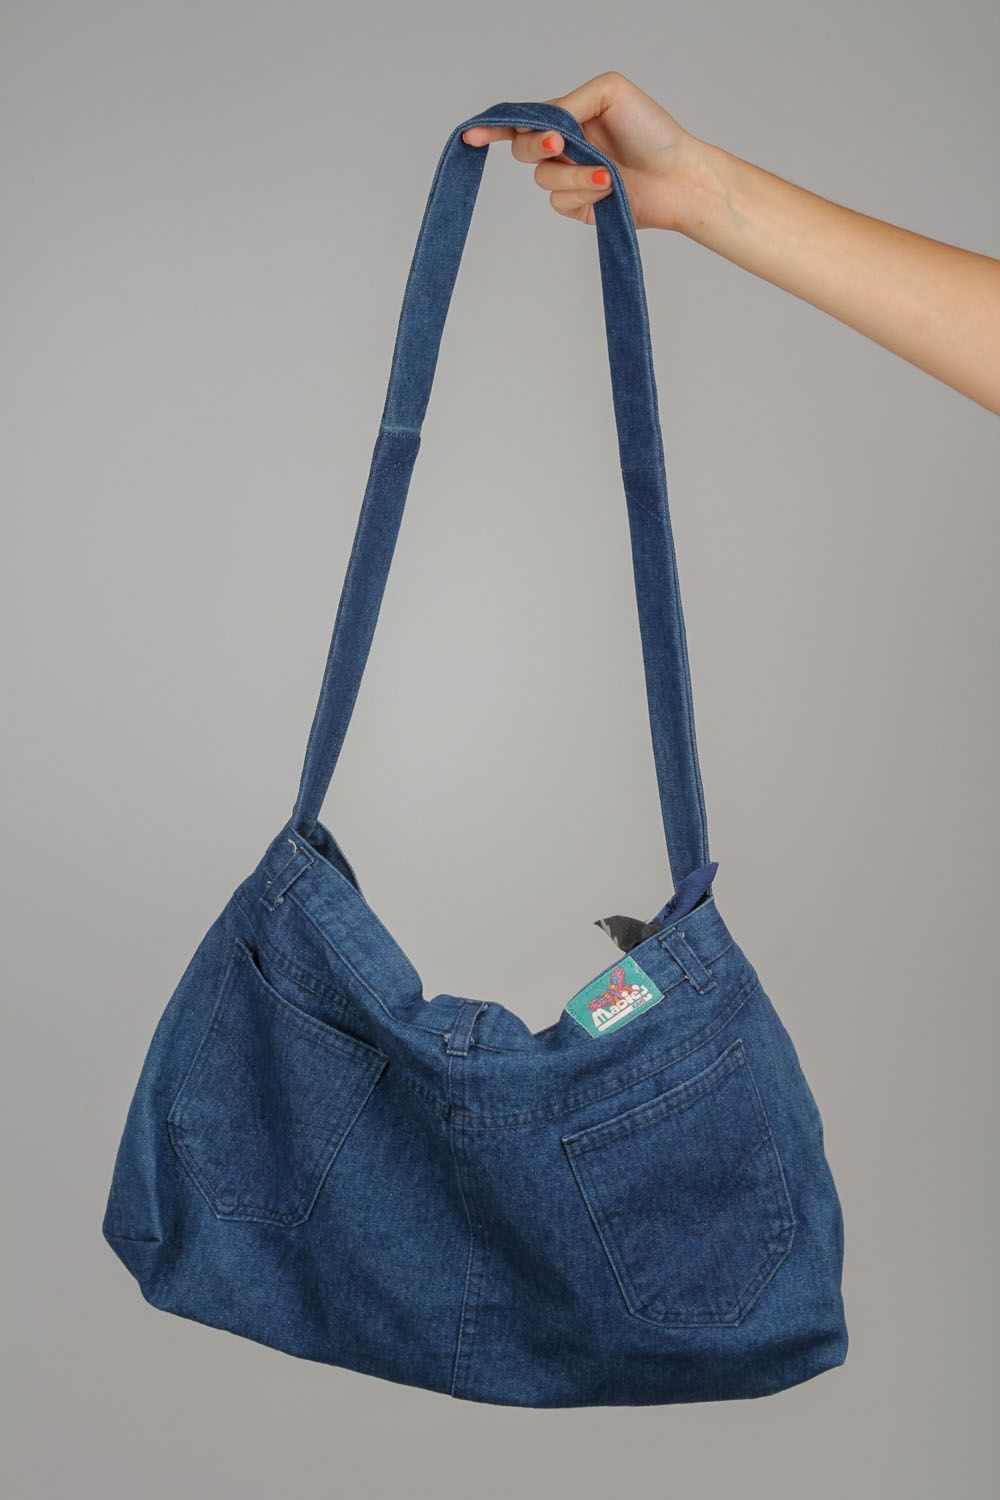 Damentasche aus Jeans foto 4